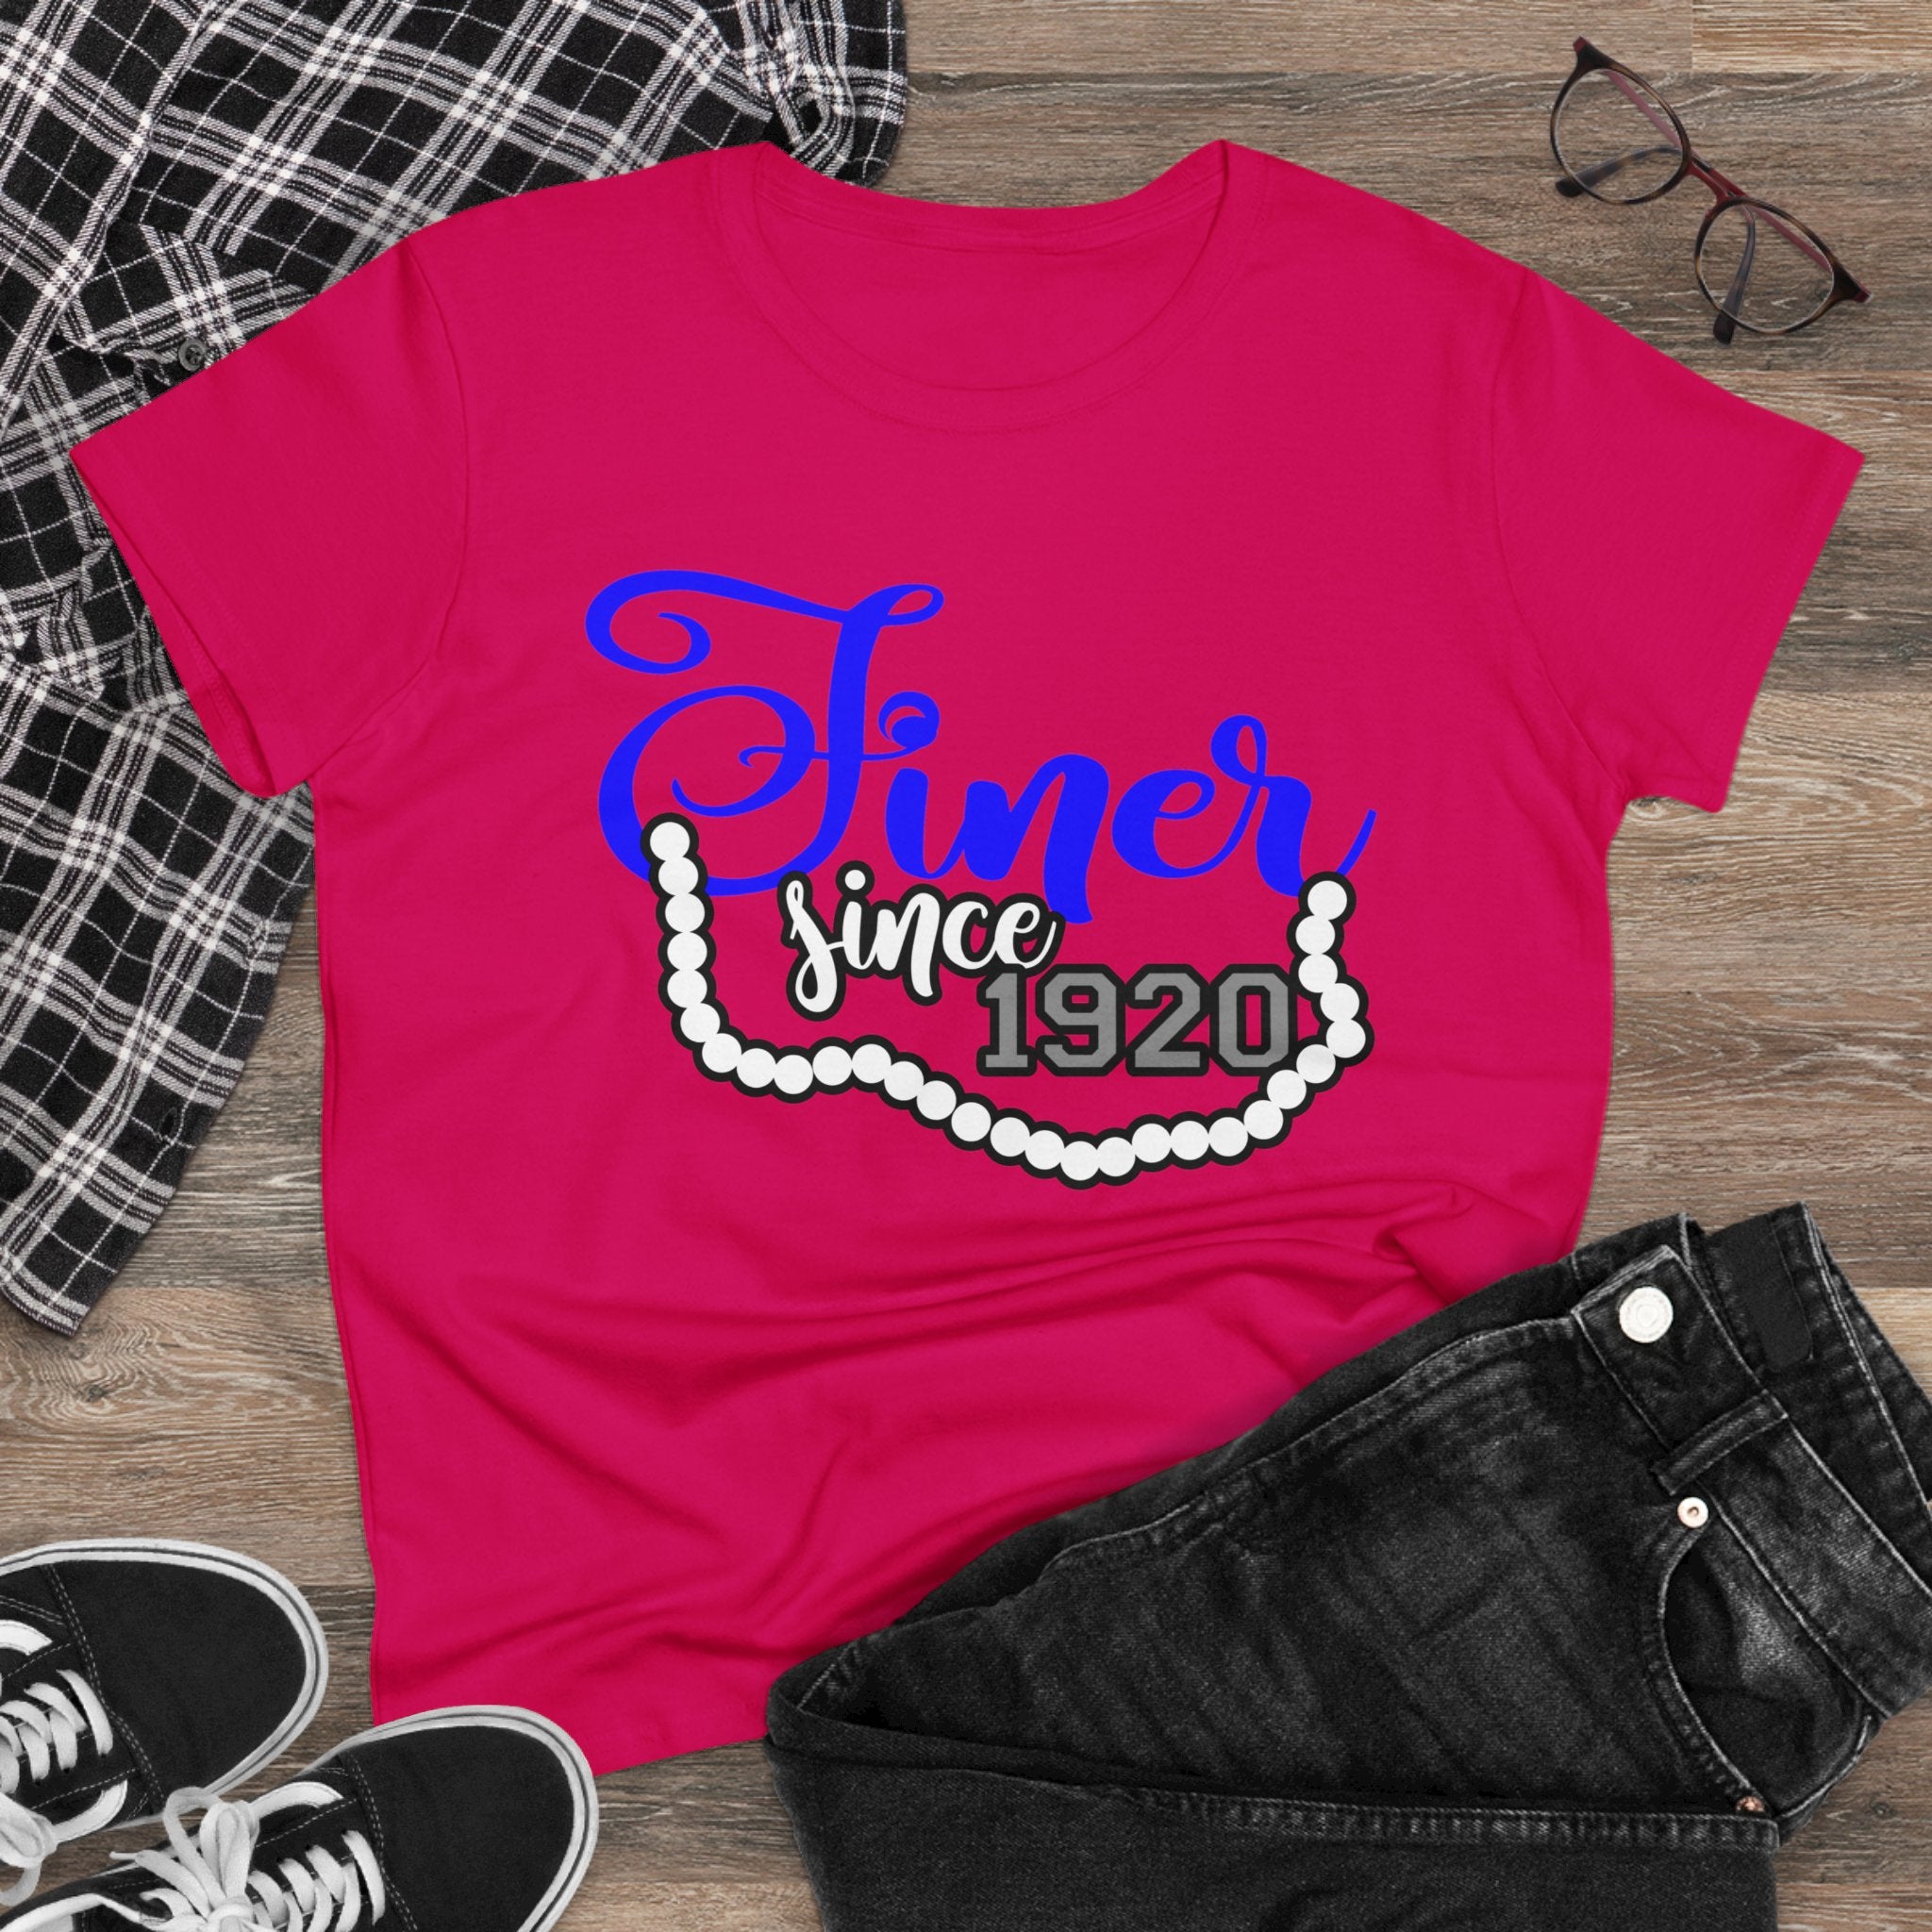 Finer Since 1920 Women's Shirt